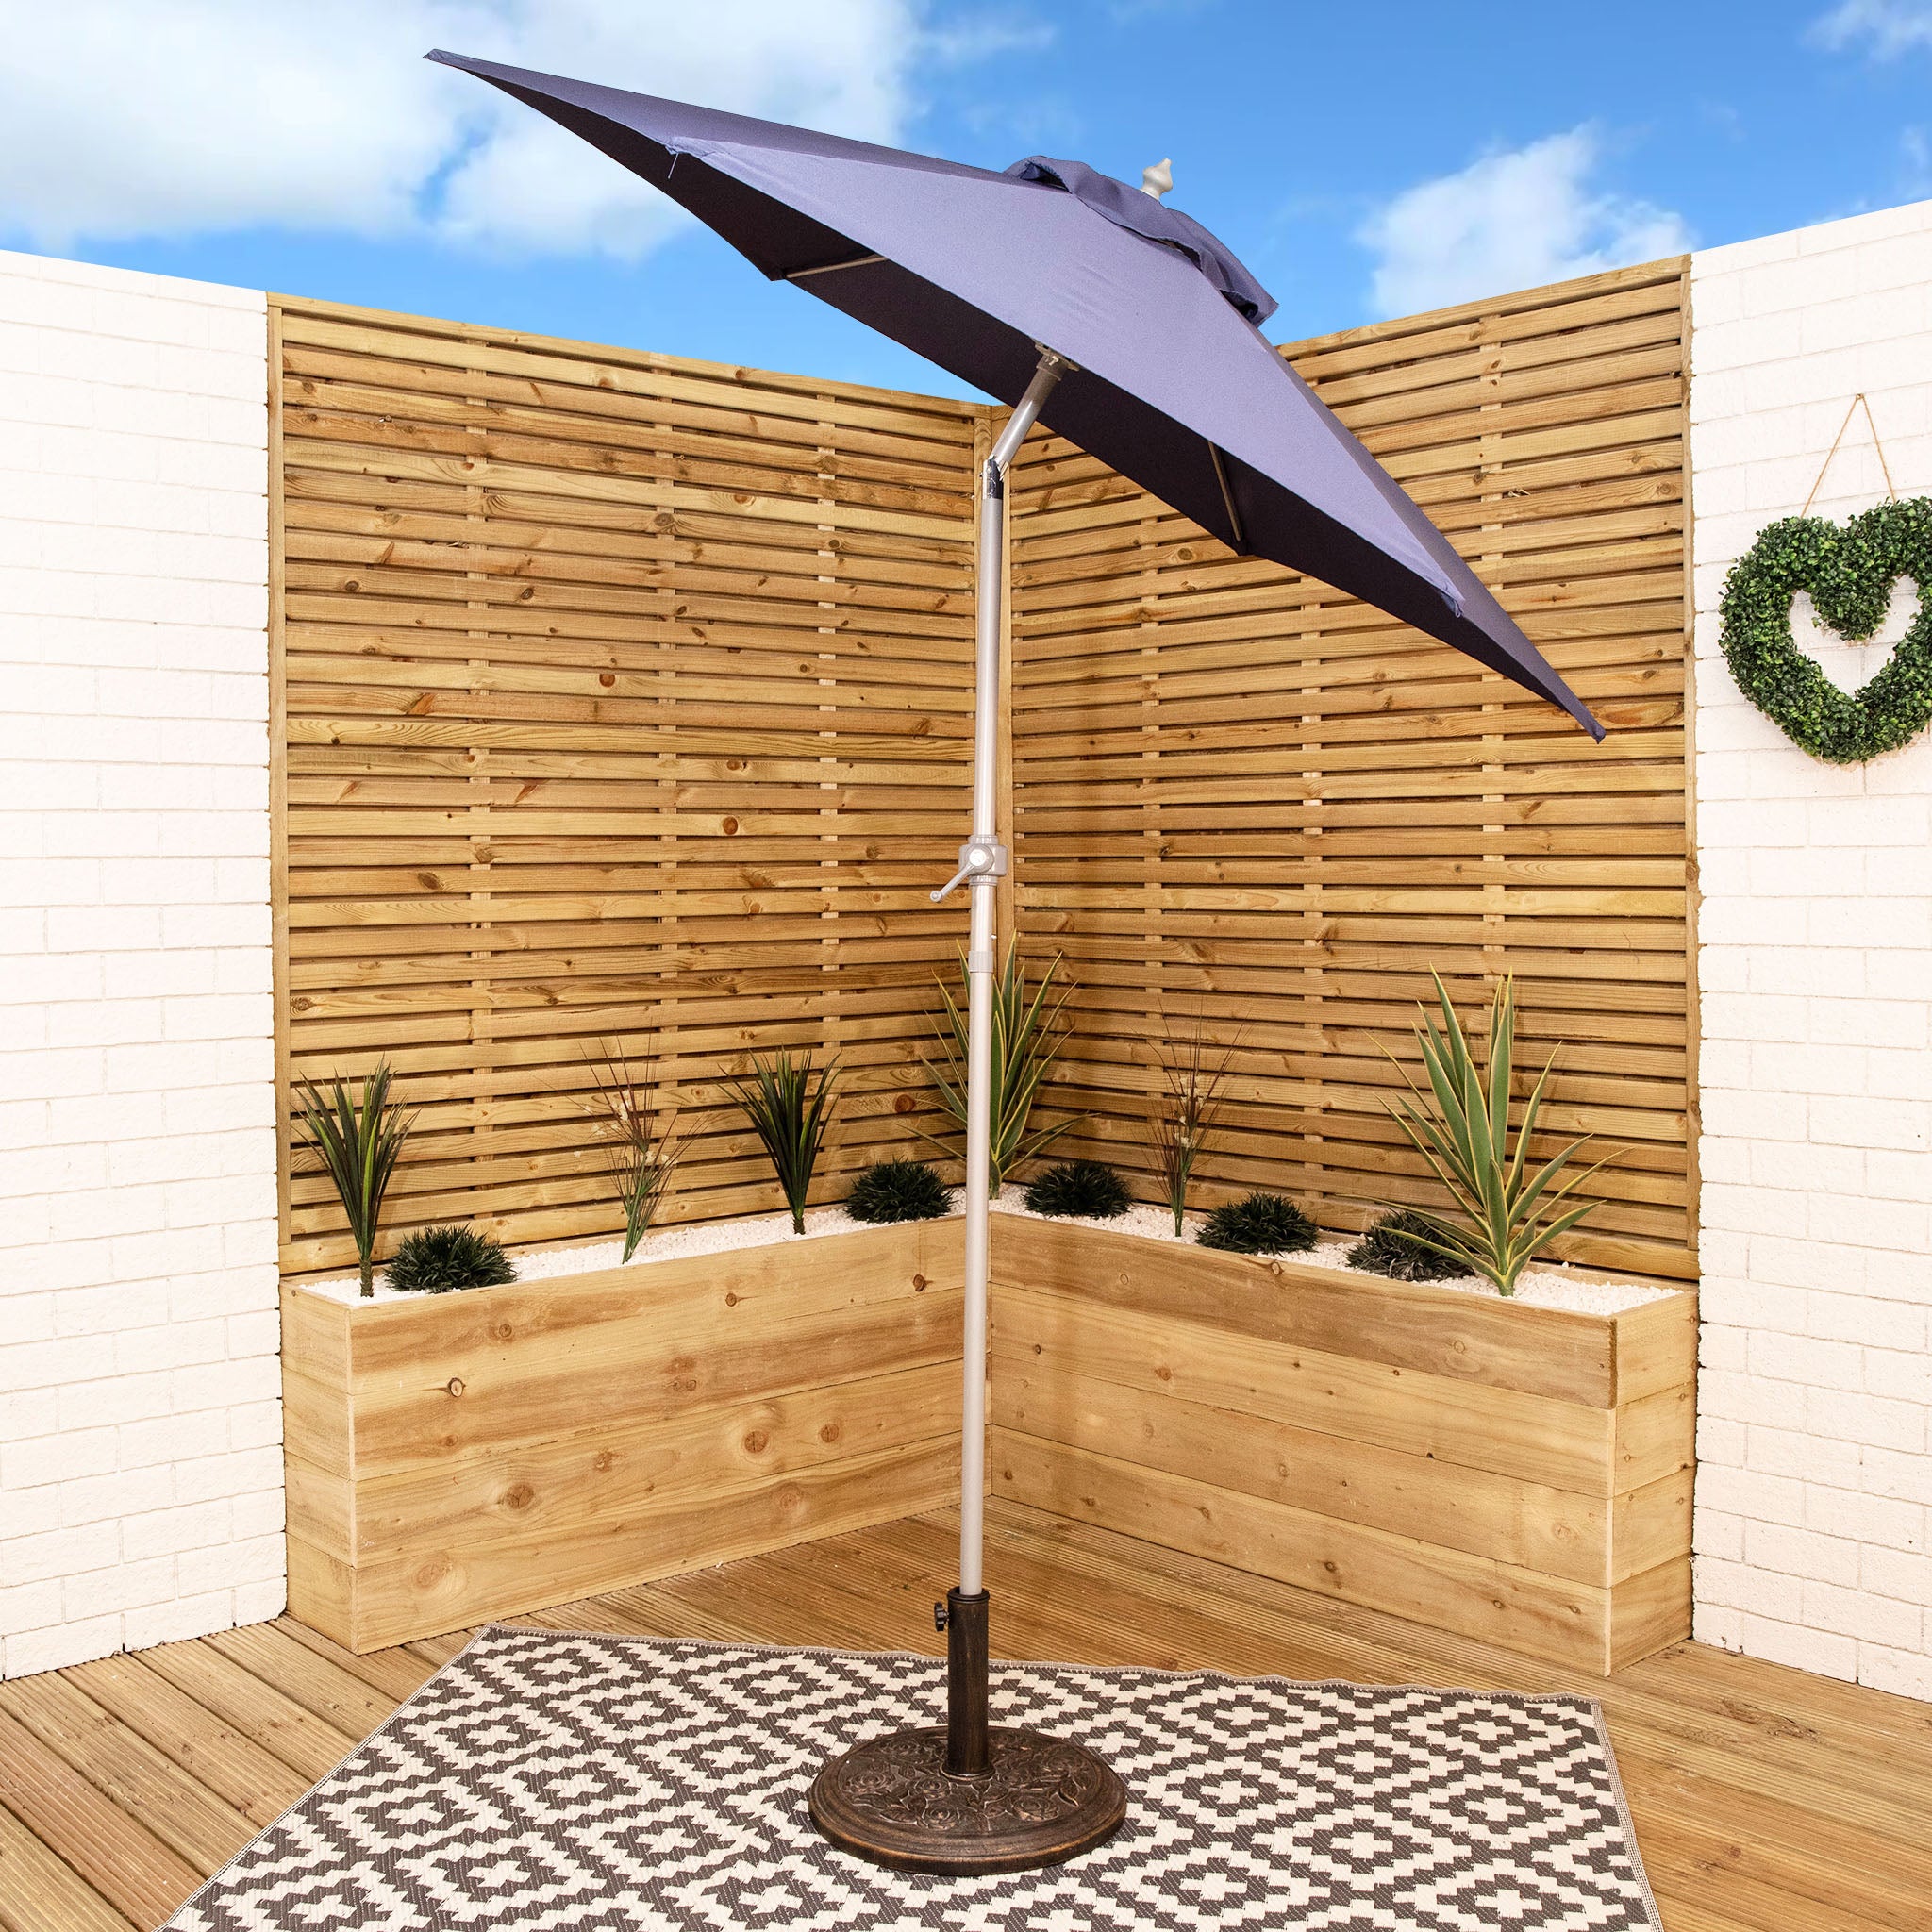 2m Lightweight Aluminium Garden Patio Sun Shade Parasol with Crank & Tilt Mechanism in Navy